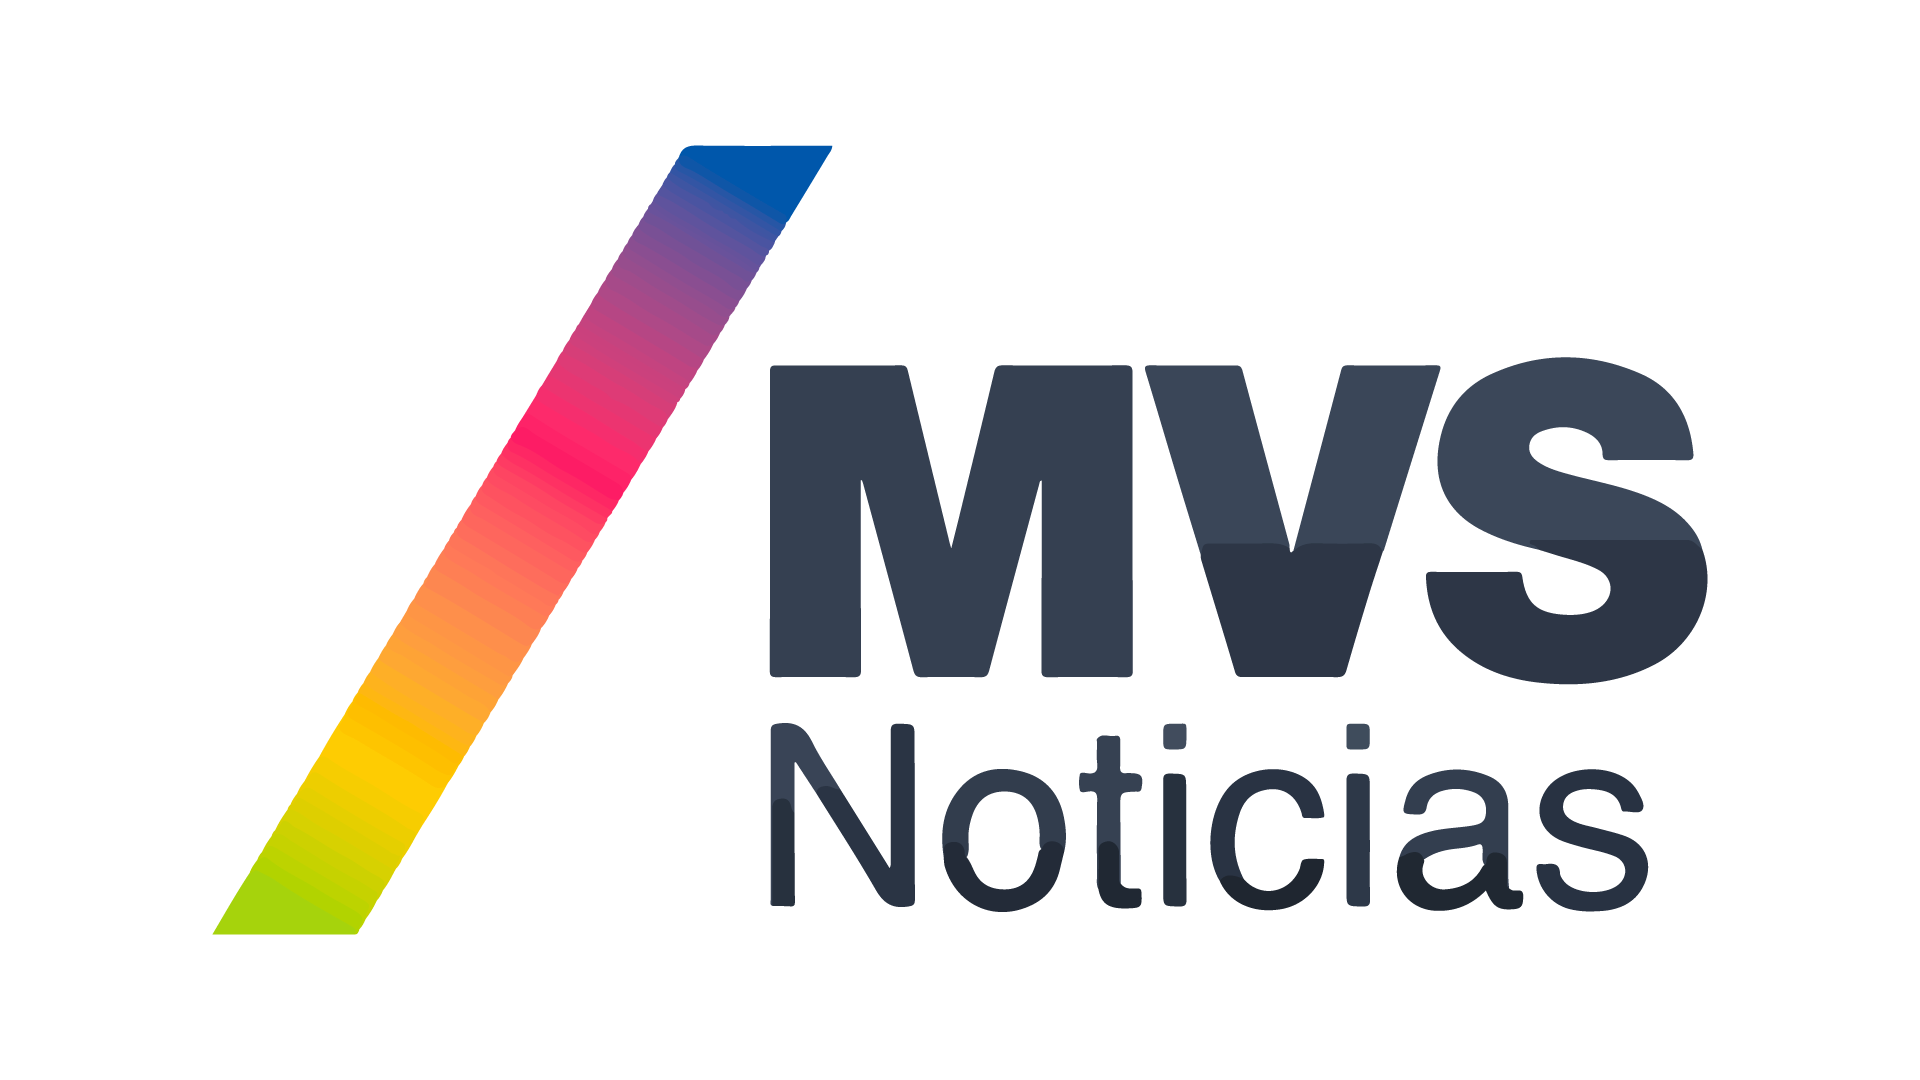 Mvs Radio En Vivo Online Teleame Directos Tv Mexico Su principal competidor es telemundo. teleame directos tv